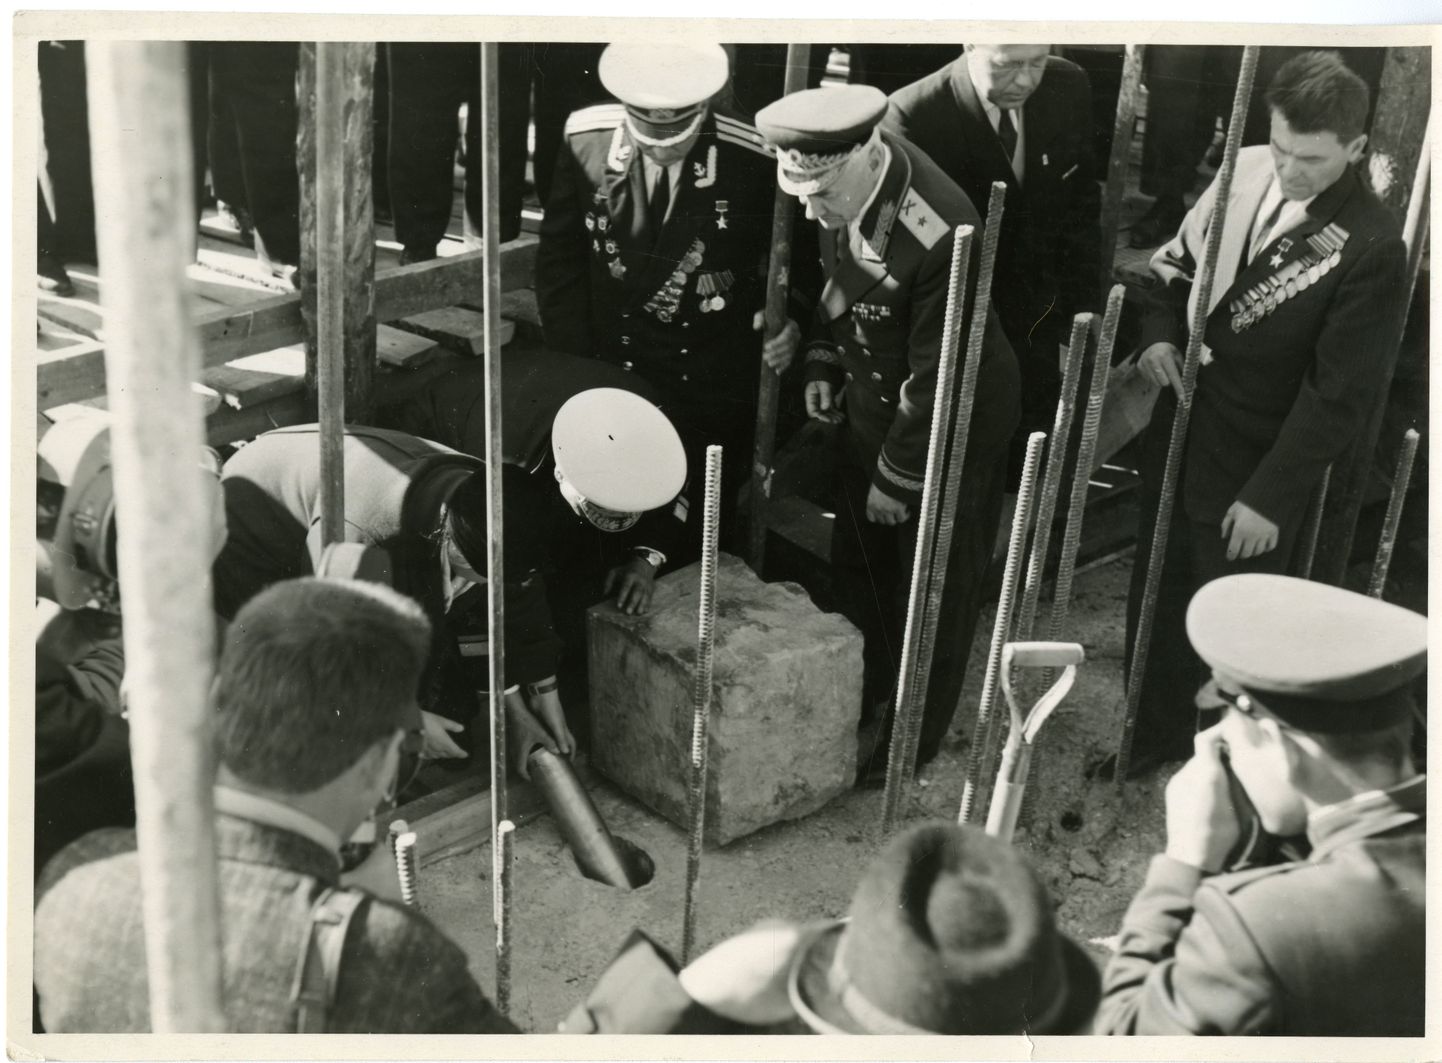 17. SEPTEMBER 1966: Sündmuse olulisusest annab vahest pildi tõsiasi, et koos kõrgete Nõukogude sõjaväelastega andis nurgakivisse pandud ürikule oma allkirja ENSV ministrite nõukogu esimehe asetäitja Arnold Green.
Saaremaa muuseum